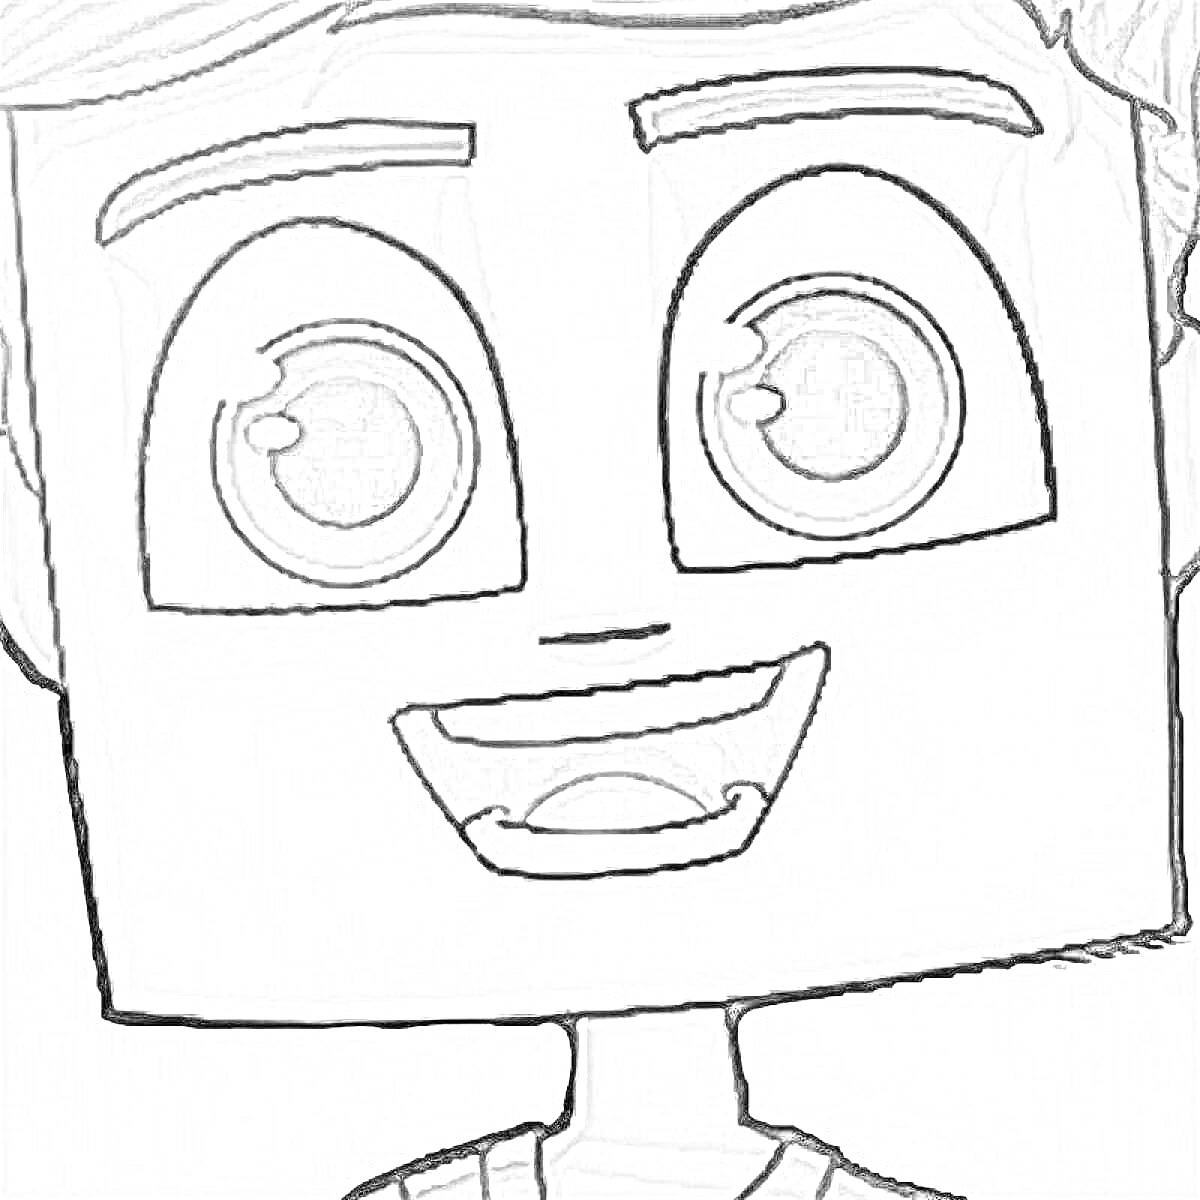 Раскраска Квадратное лицо персонажа с крупными круглыми глазами и широкими бровями